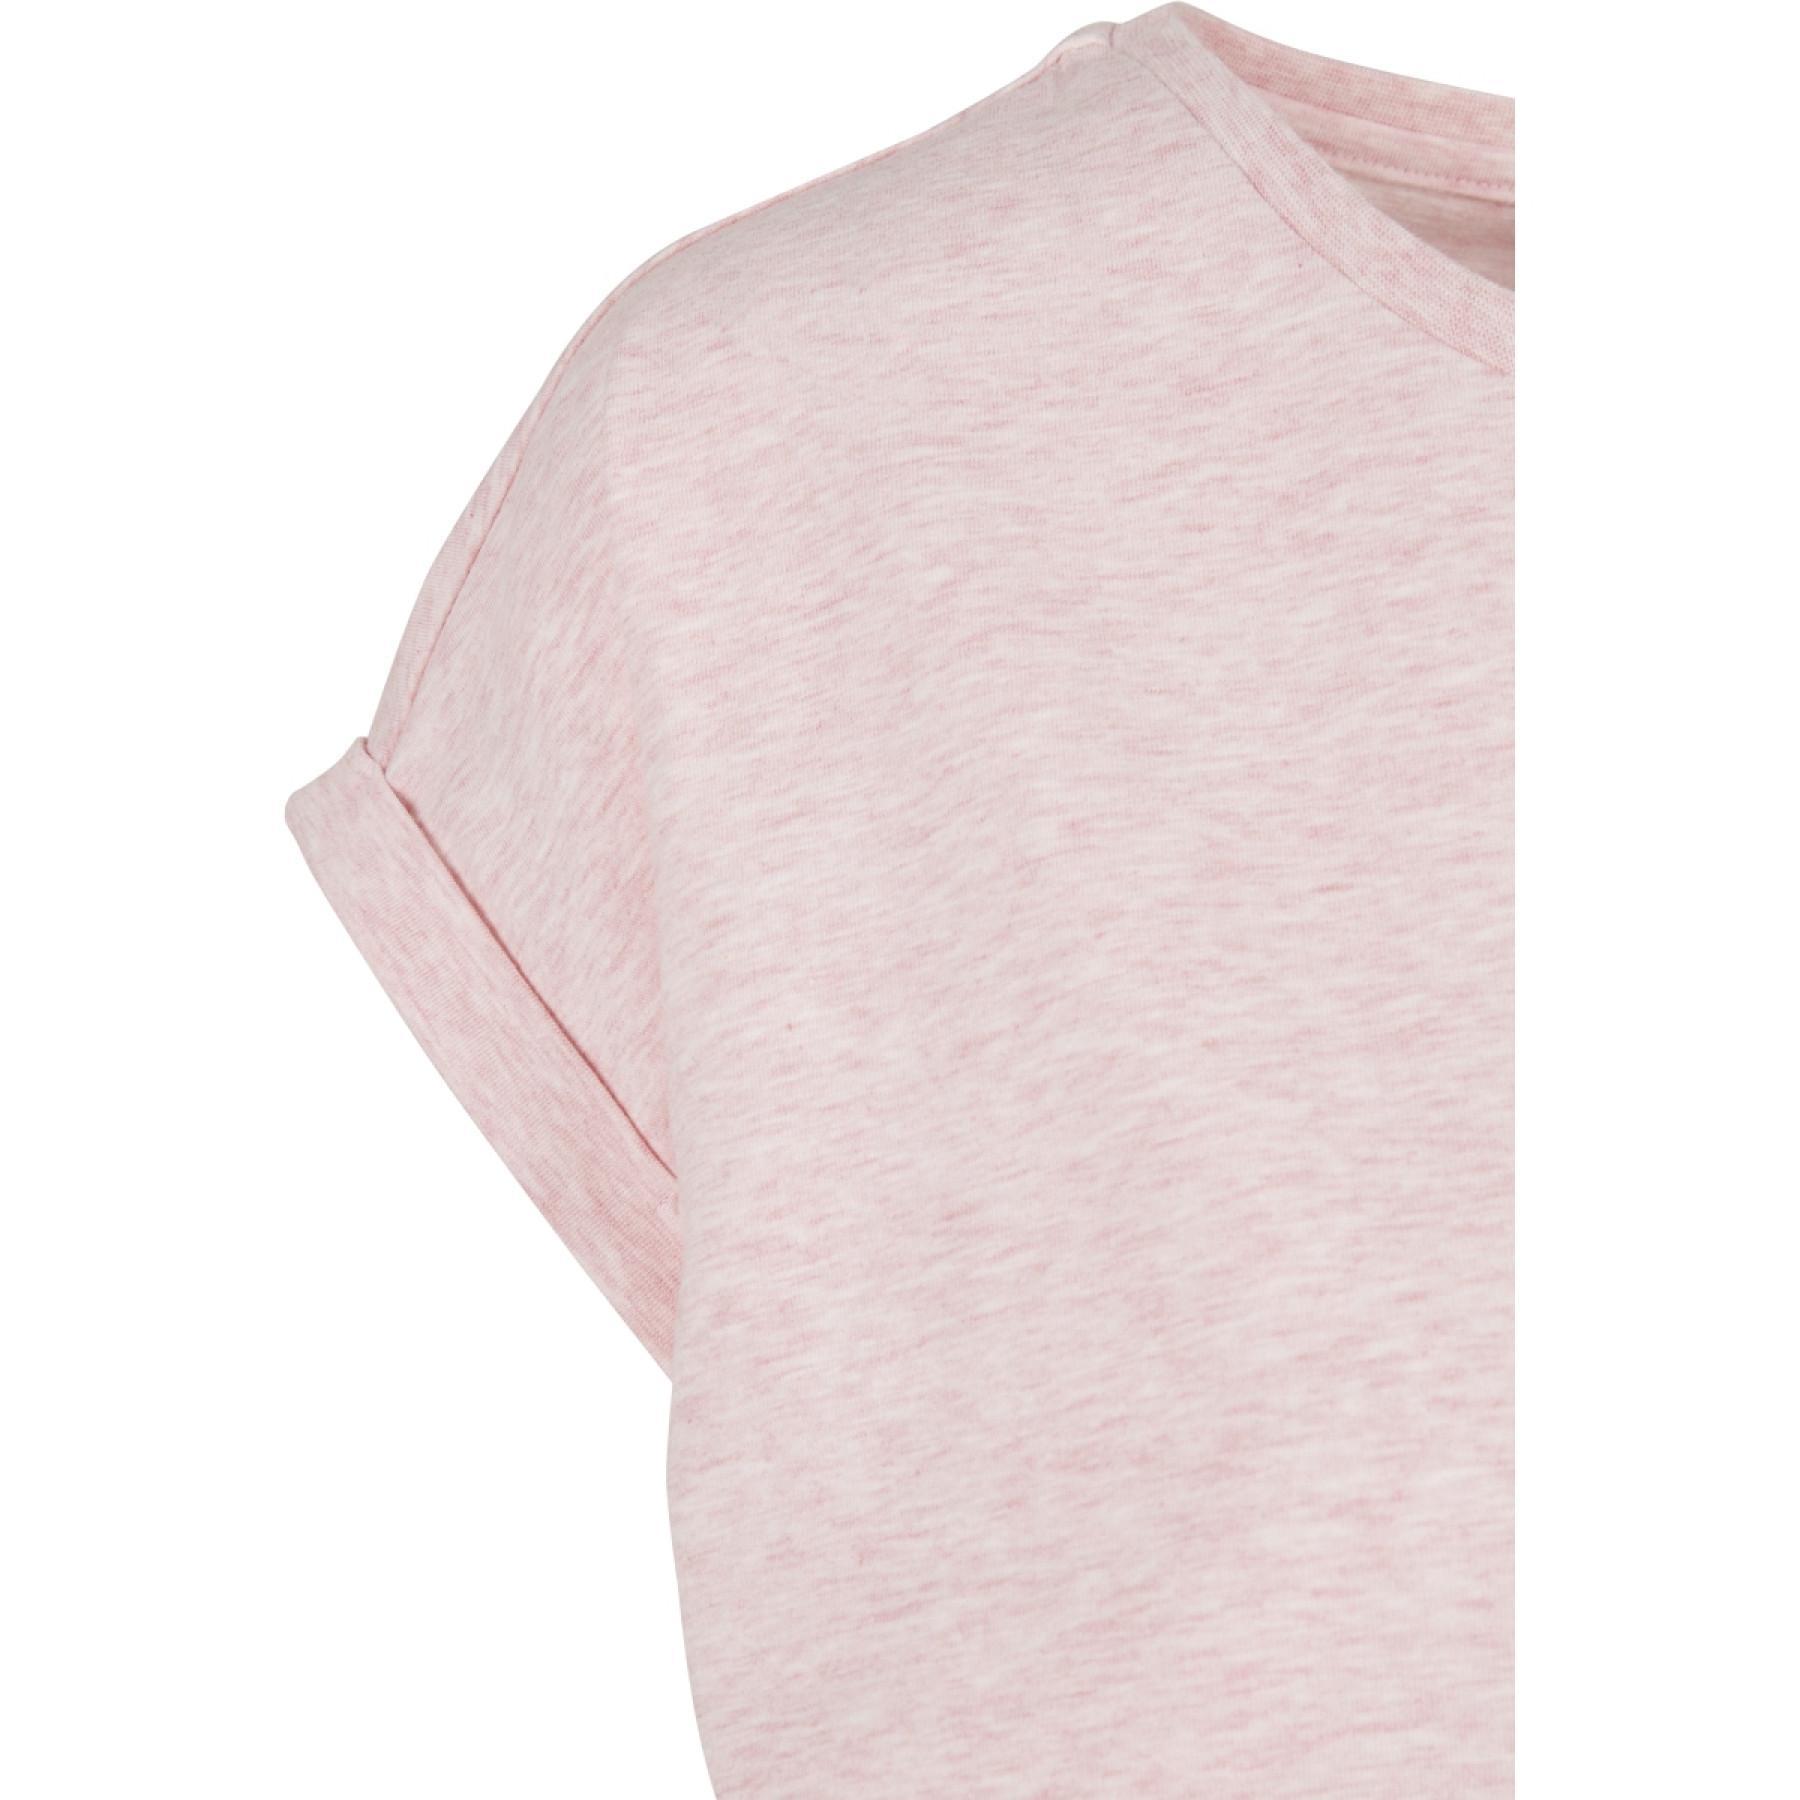 T-shirt femme Urban Classics color melange extended shoulder-grandes tailles